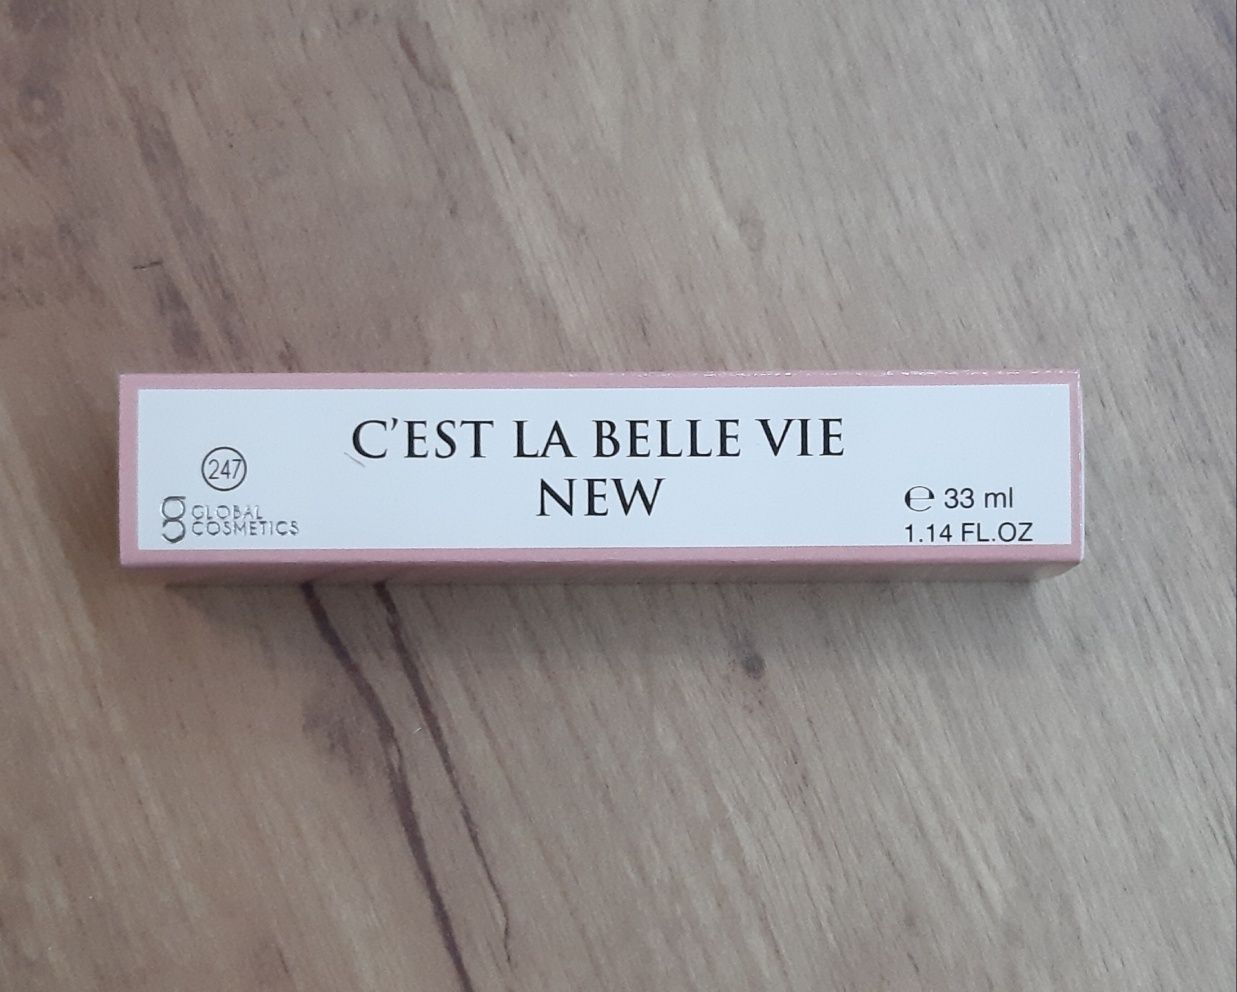 Damskie Perfumy C'est la belle vie New (Global Cosmetics)